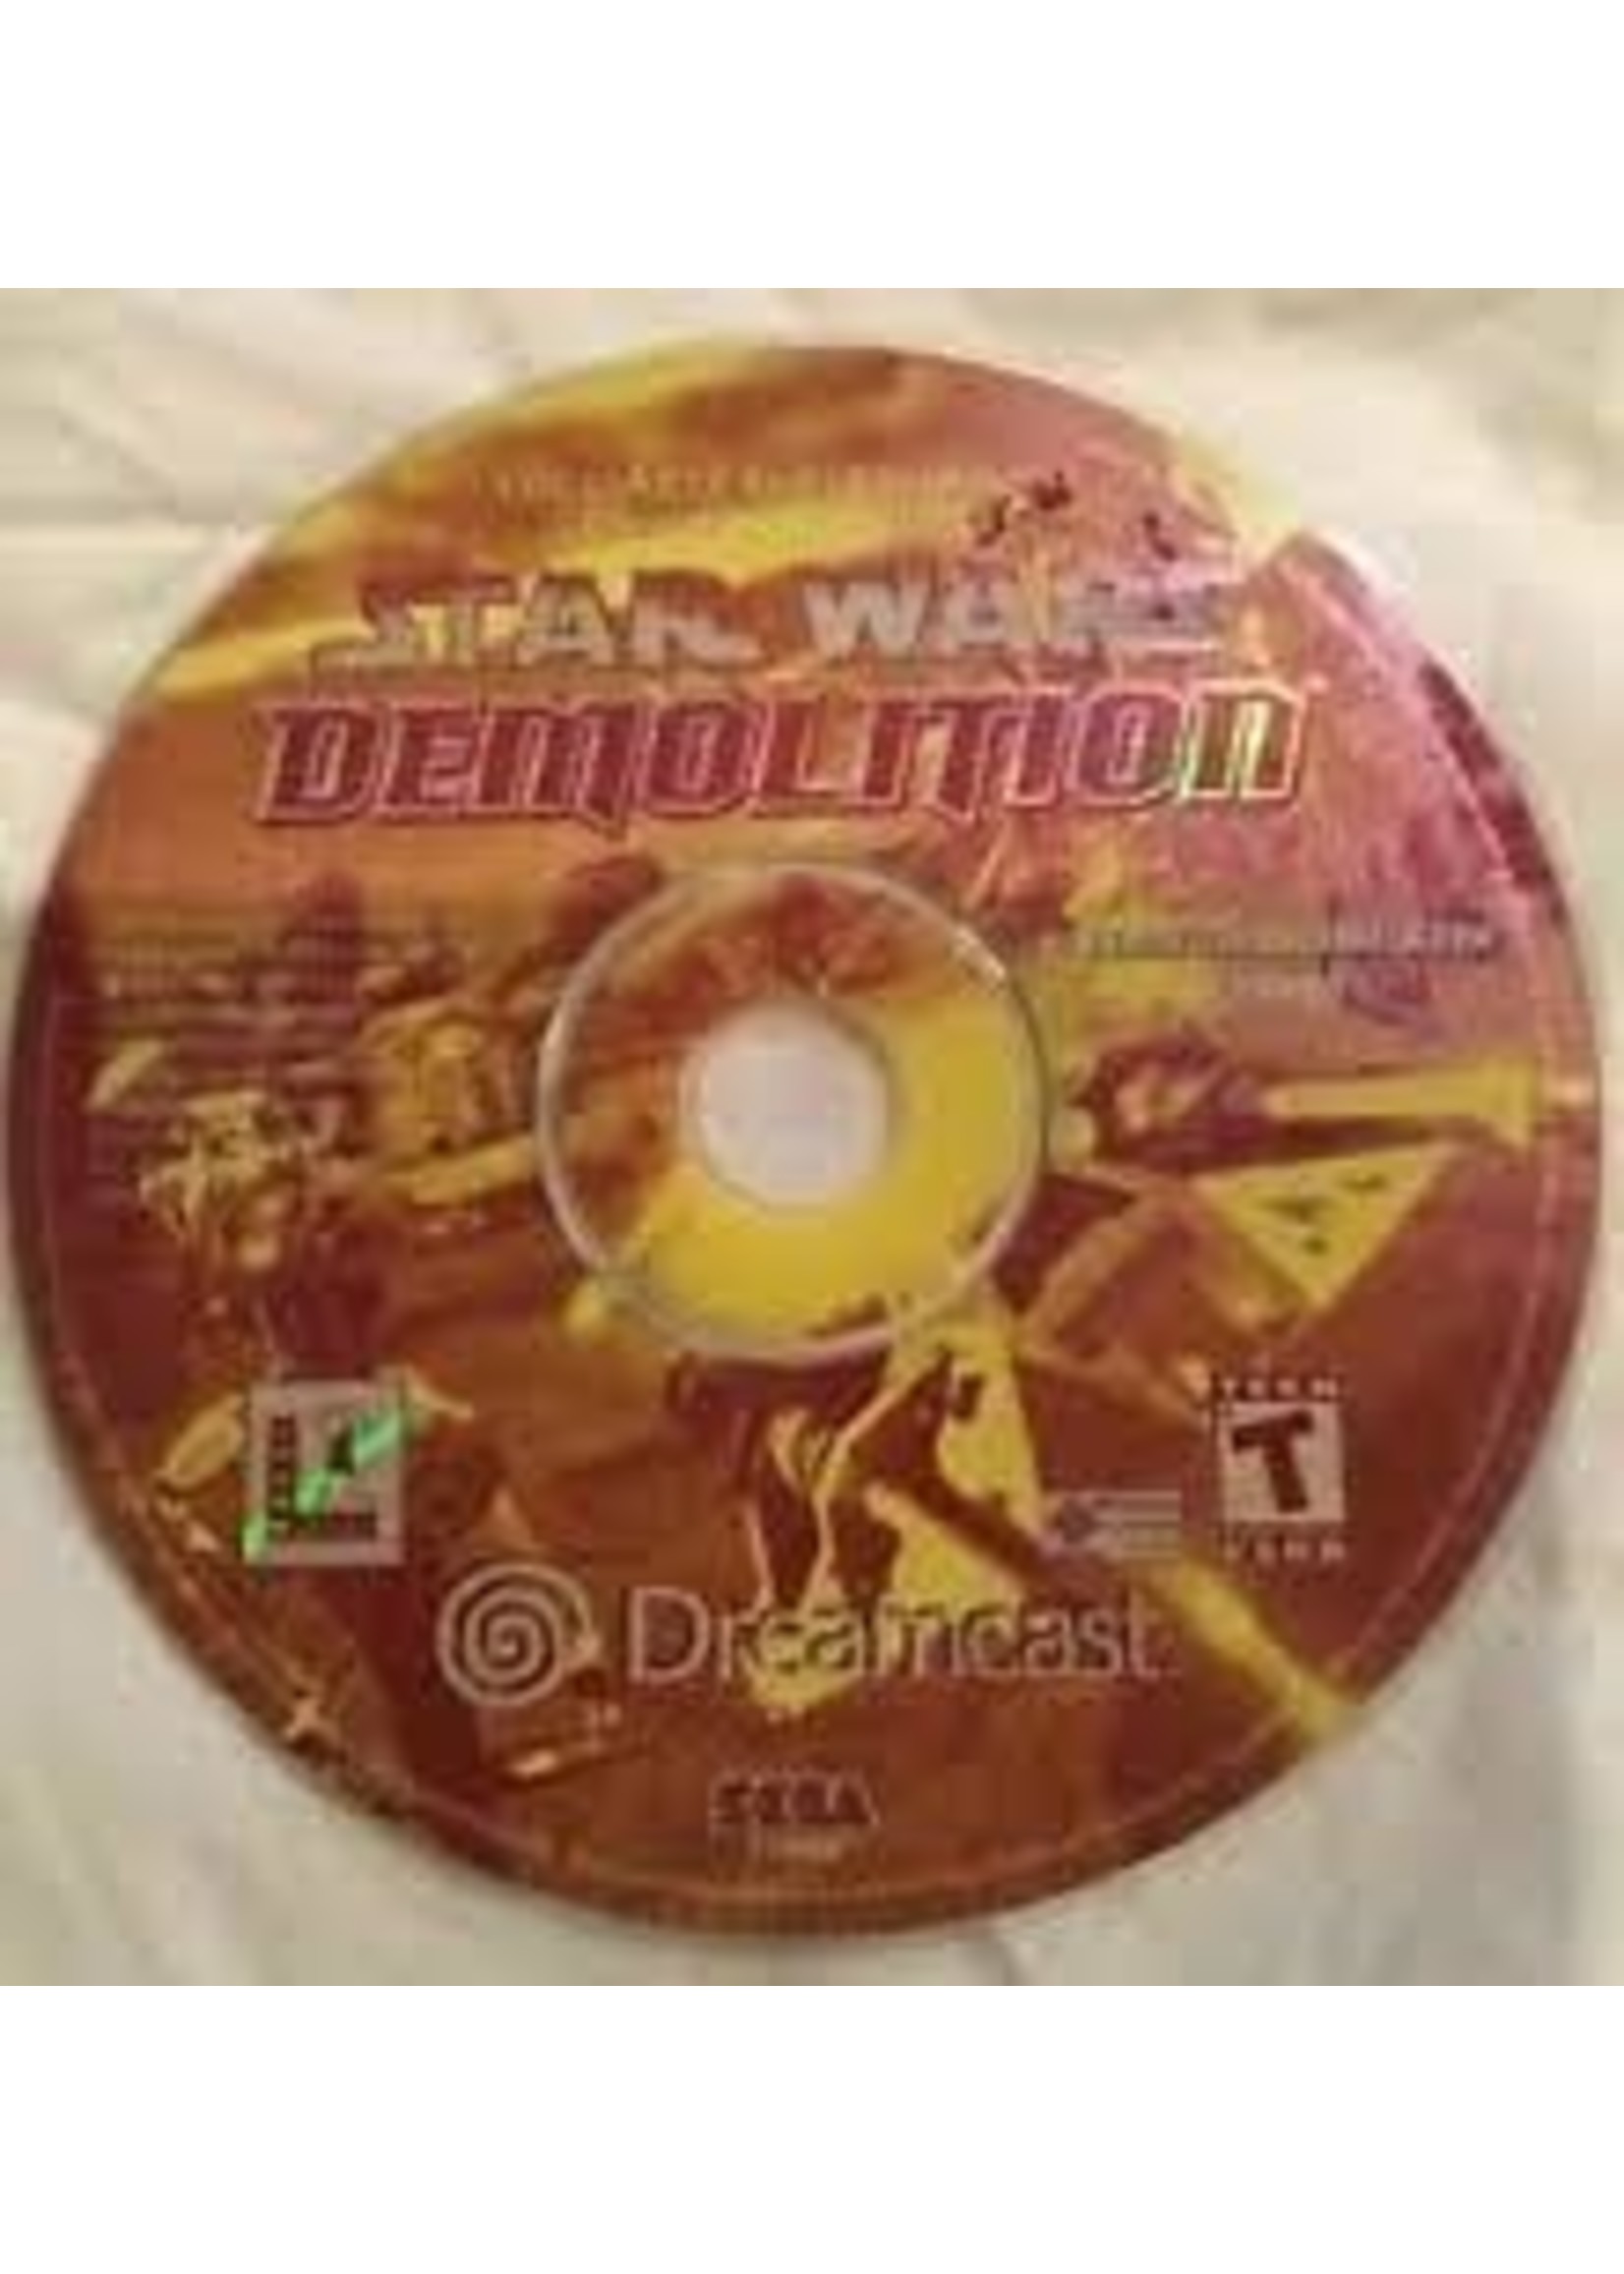 Sega Dreamcast Star Wars Demolition - Disk Only